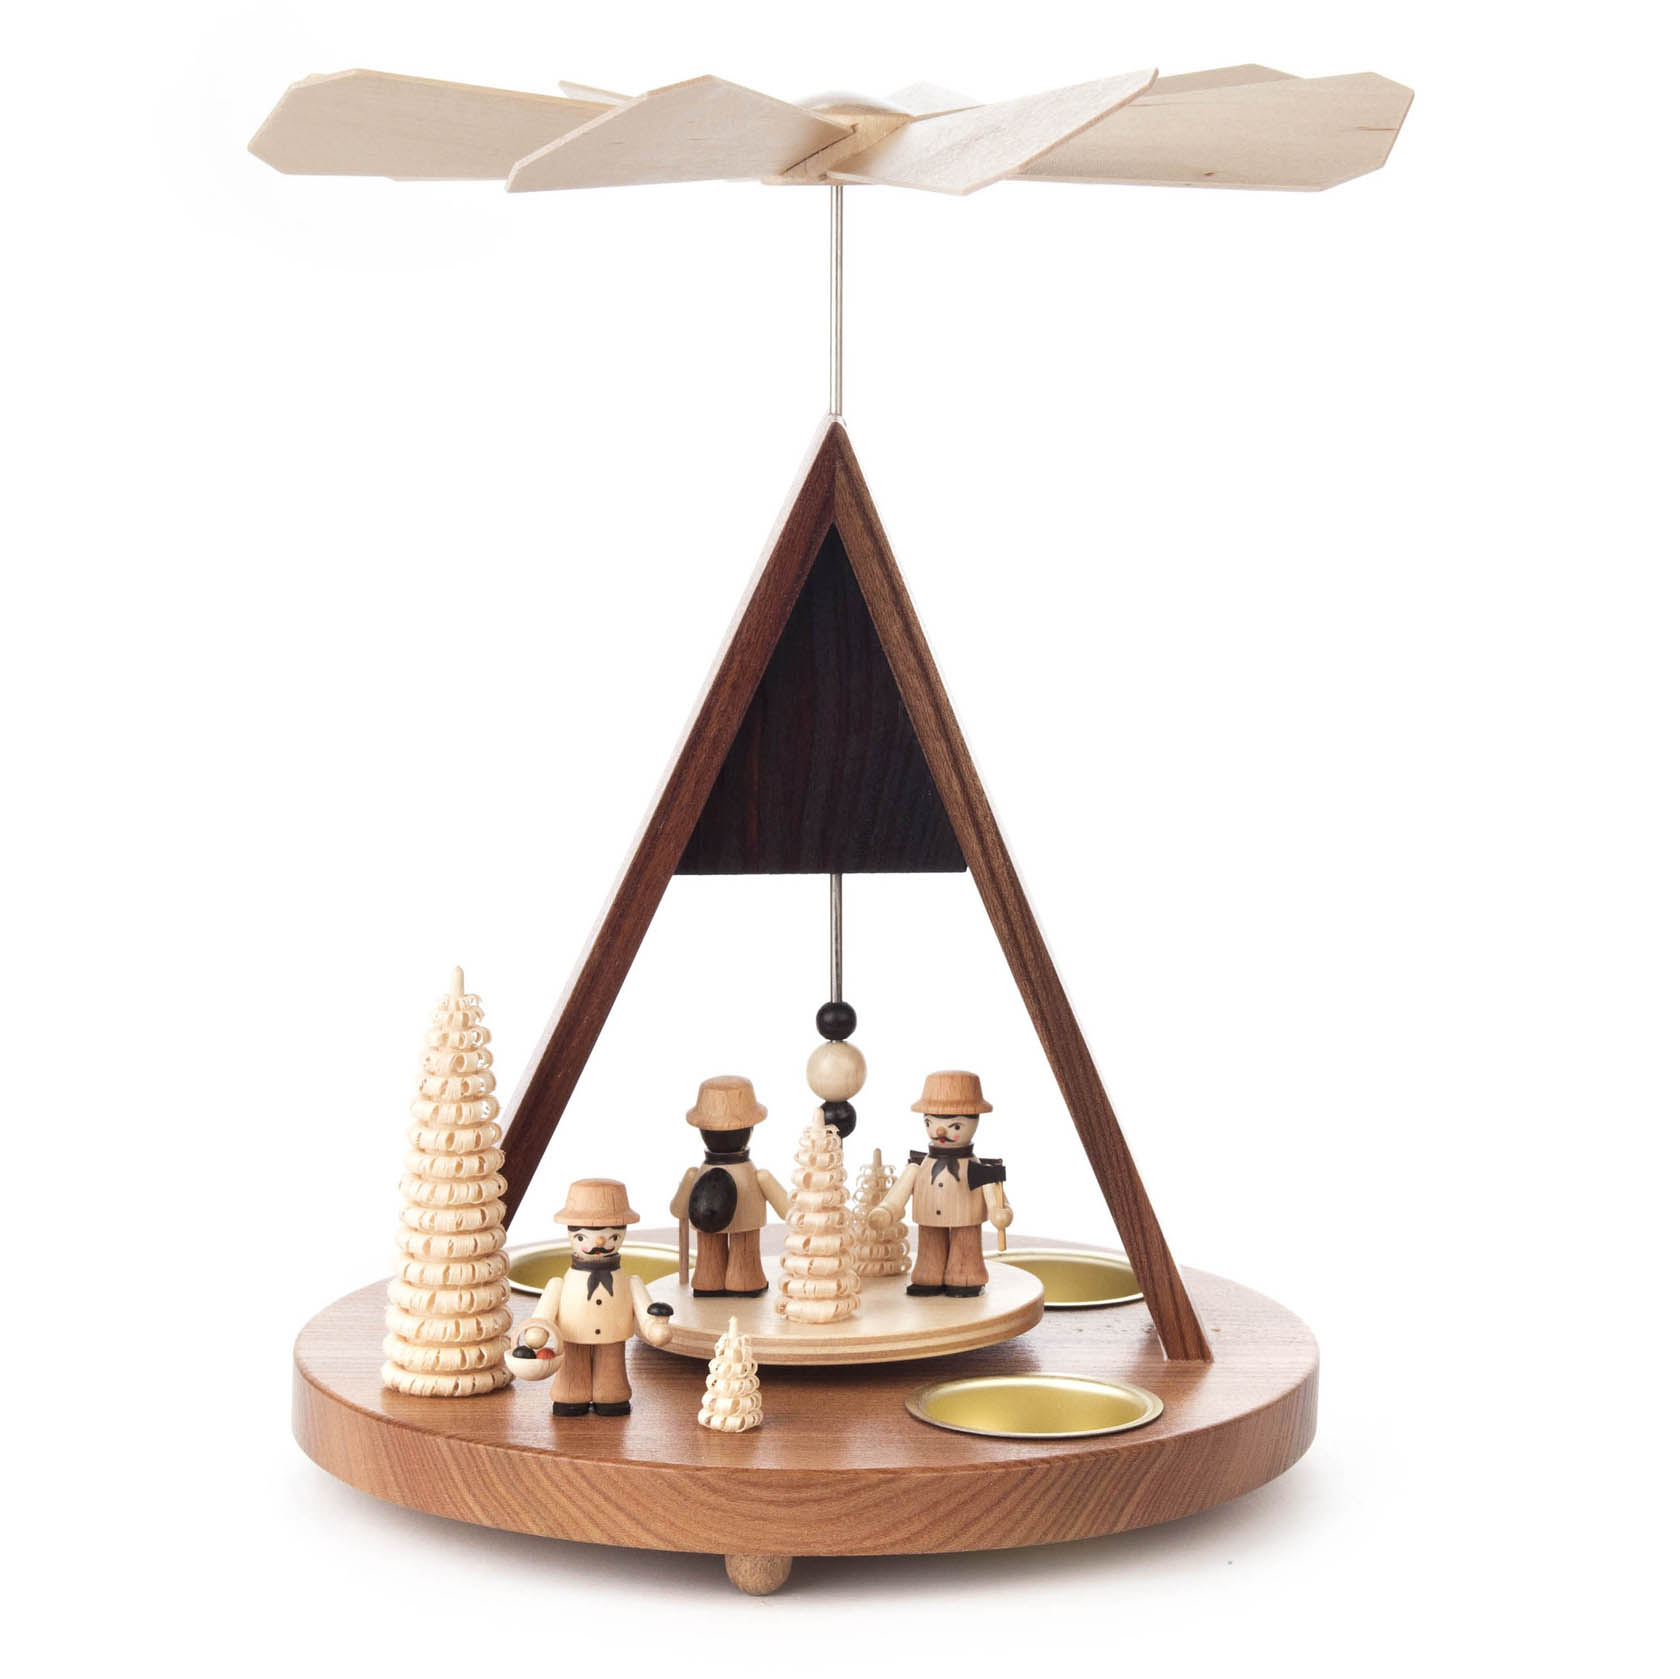 Pyramide mit Erzgebirgsfiguren und Spitzdach, für Teelichte im Dregeno Online Shop günstig kaufen